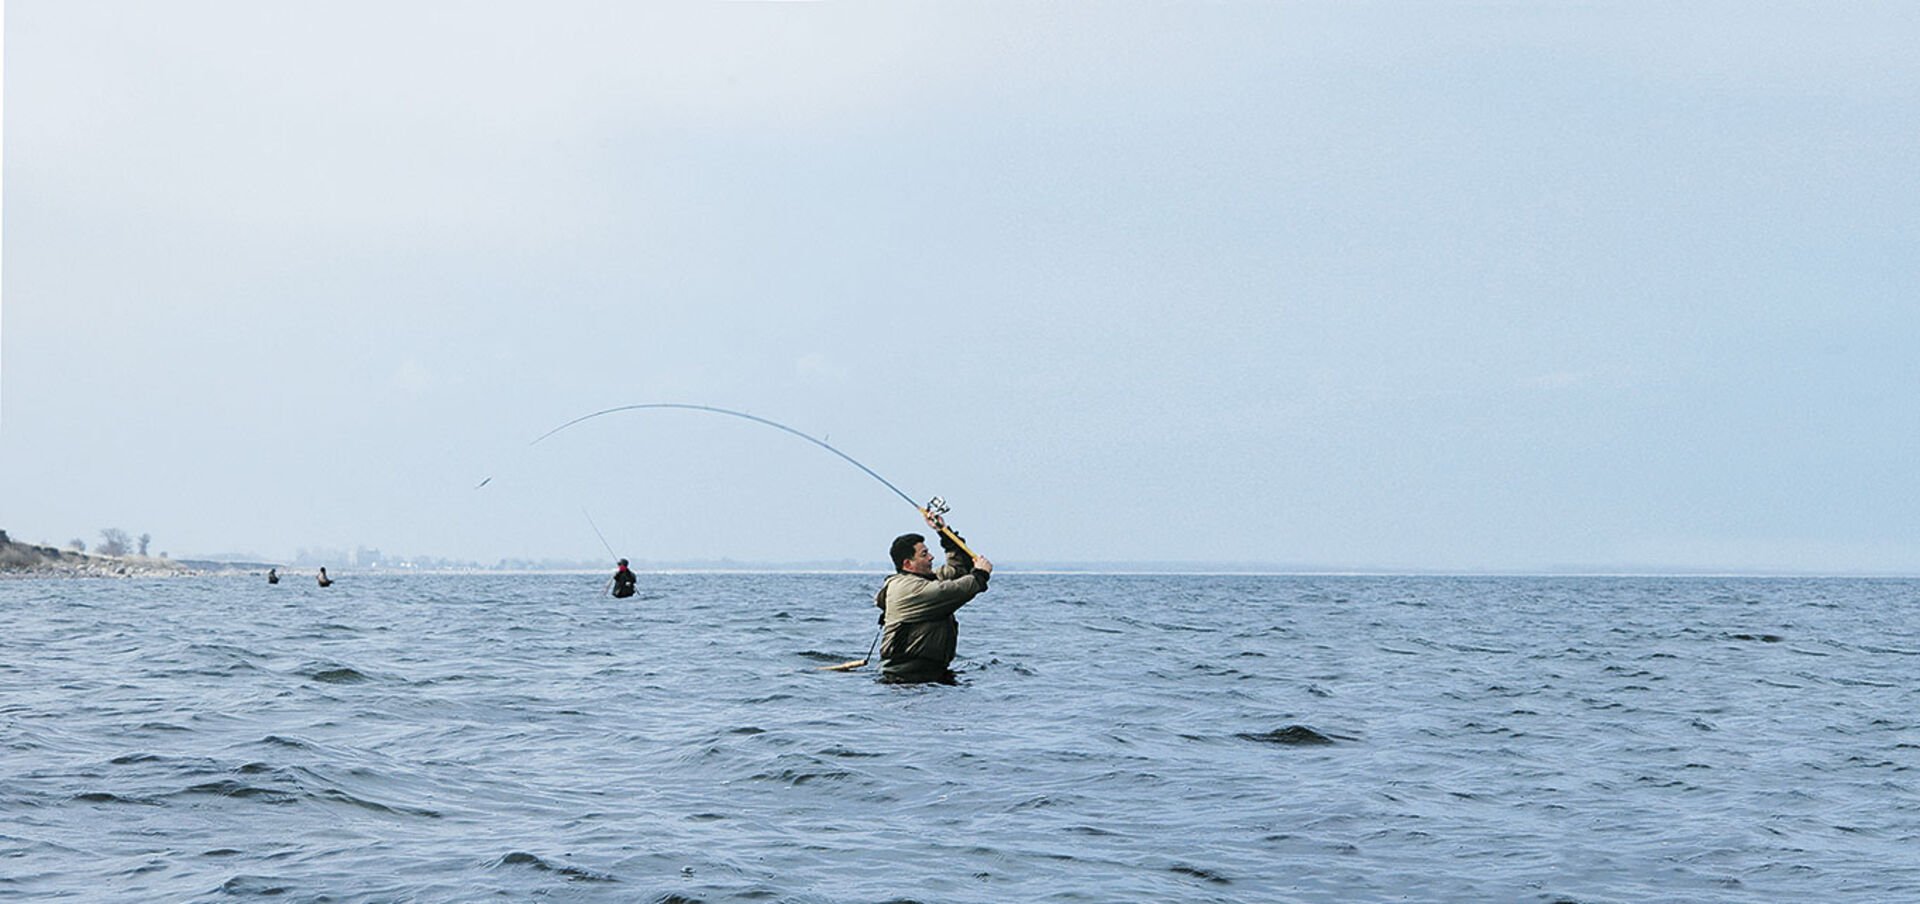  Weit hinaus lautet die Devise an der Küste – und häufig auch beim Seeforellenfischen. Deshalb brauchen die Wobbler gute Flugeigenschaften.  